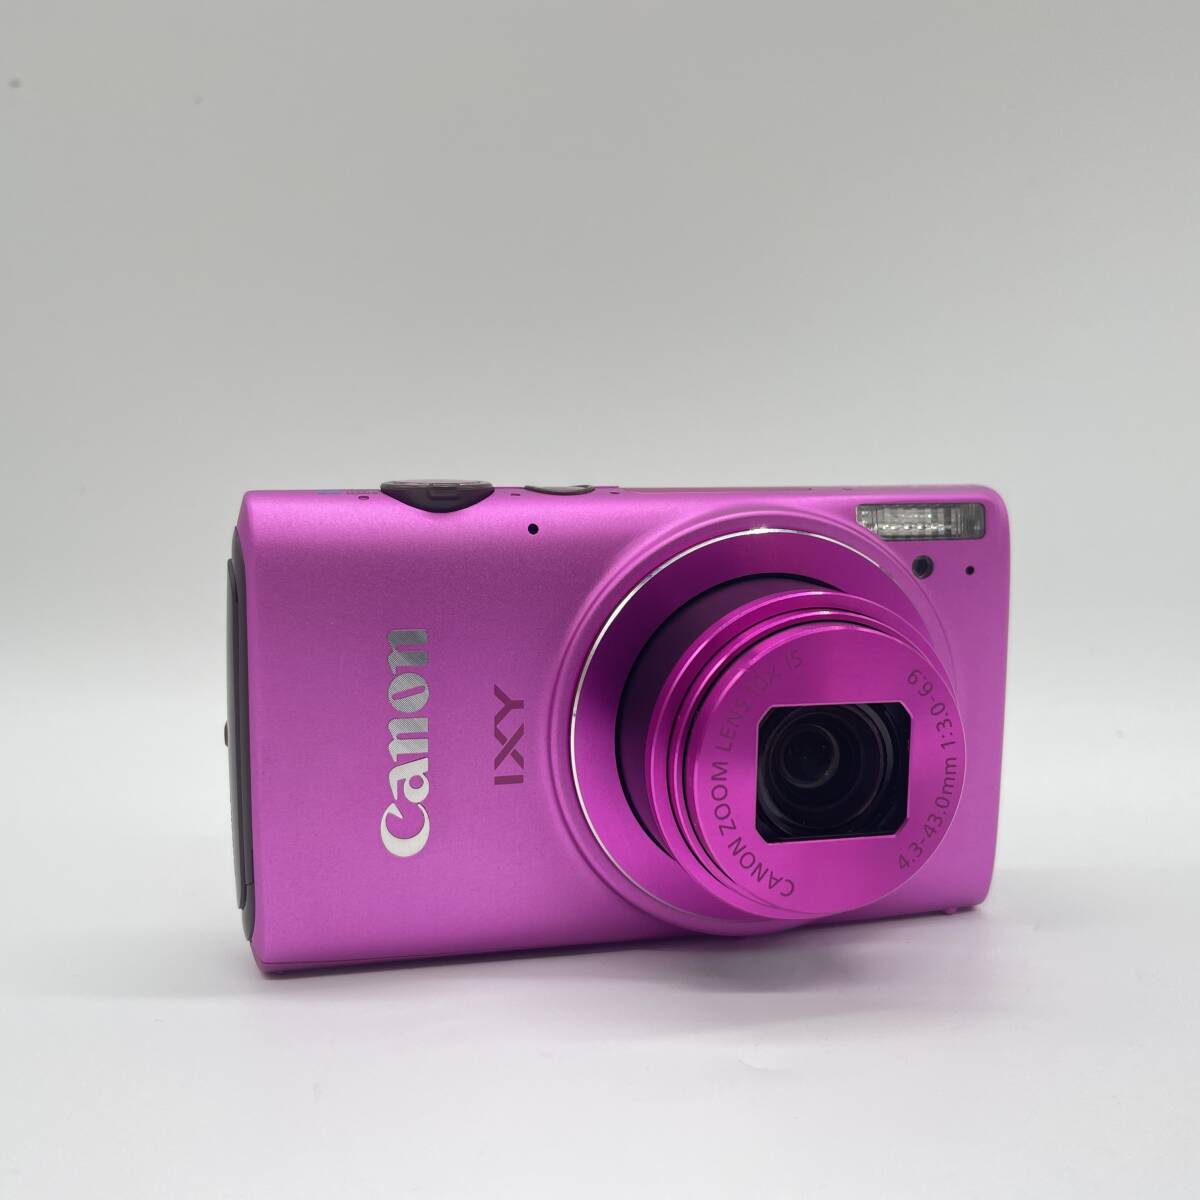 【動作確認済・備品完備・状態良好品・kenko三脚付】Canon IXY 610F PINK コンデジ デジタルカメラ シャッター&フラッシュ動作OKの画像2